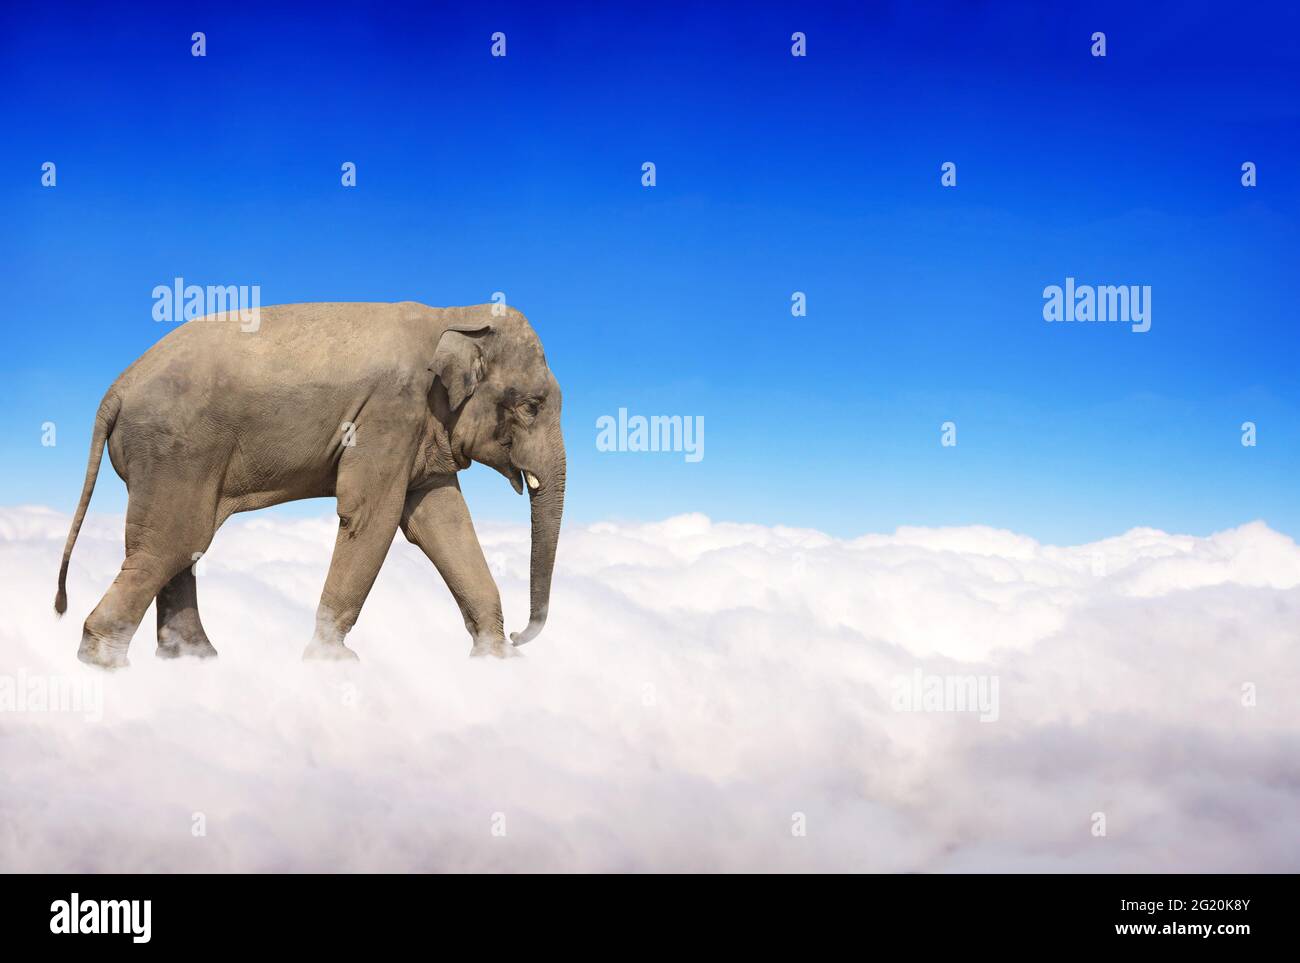 Pancarta horizontal con elefante sobre las nubes sobre el fondo azul del cielo. Lindo elefante en el cielo. Escena fantástica con un elefante caminando sobre las nubes. Foto de stock